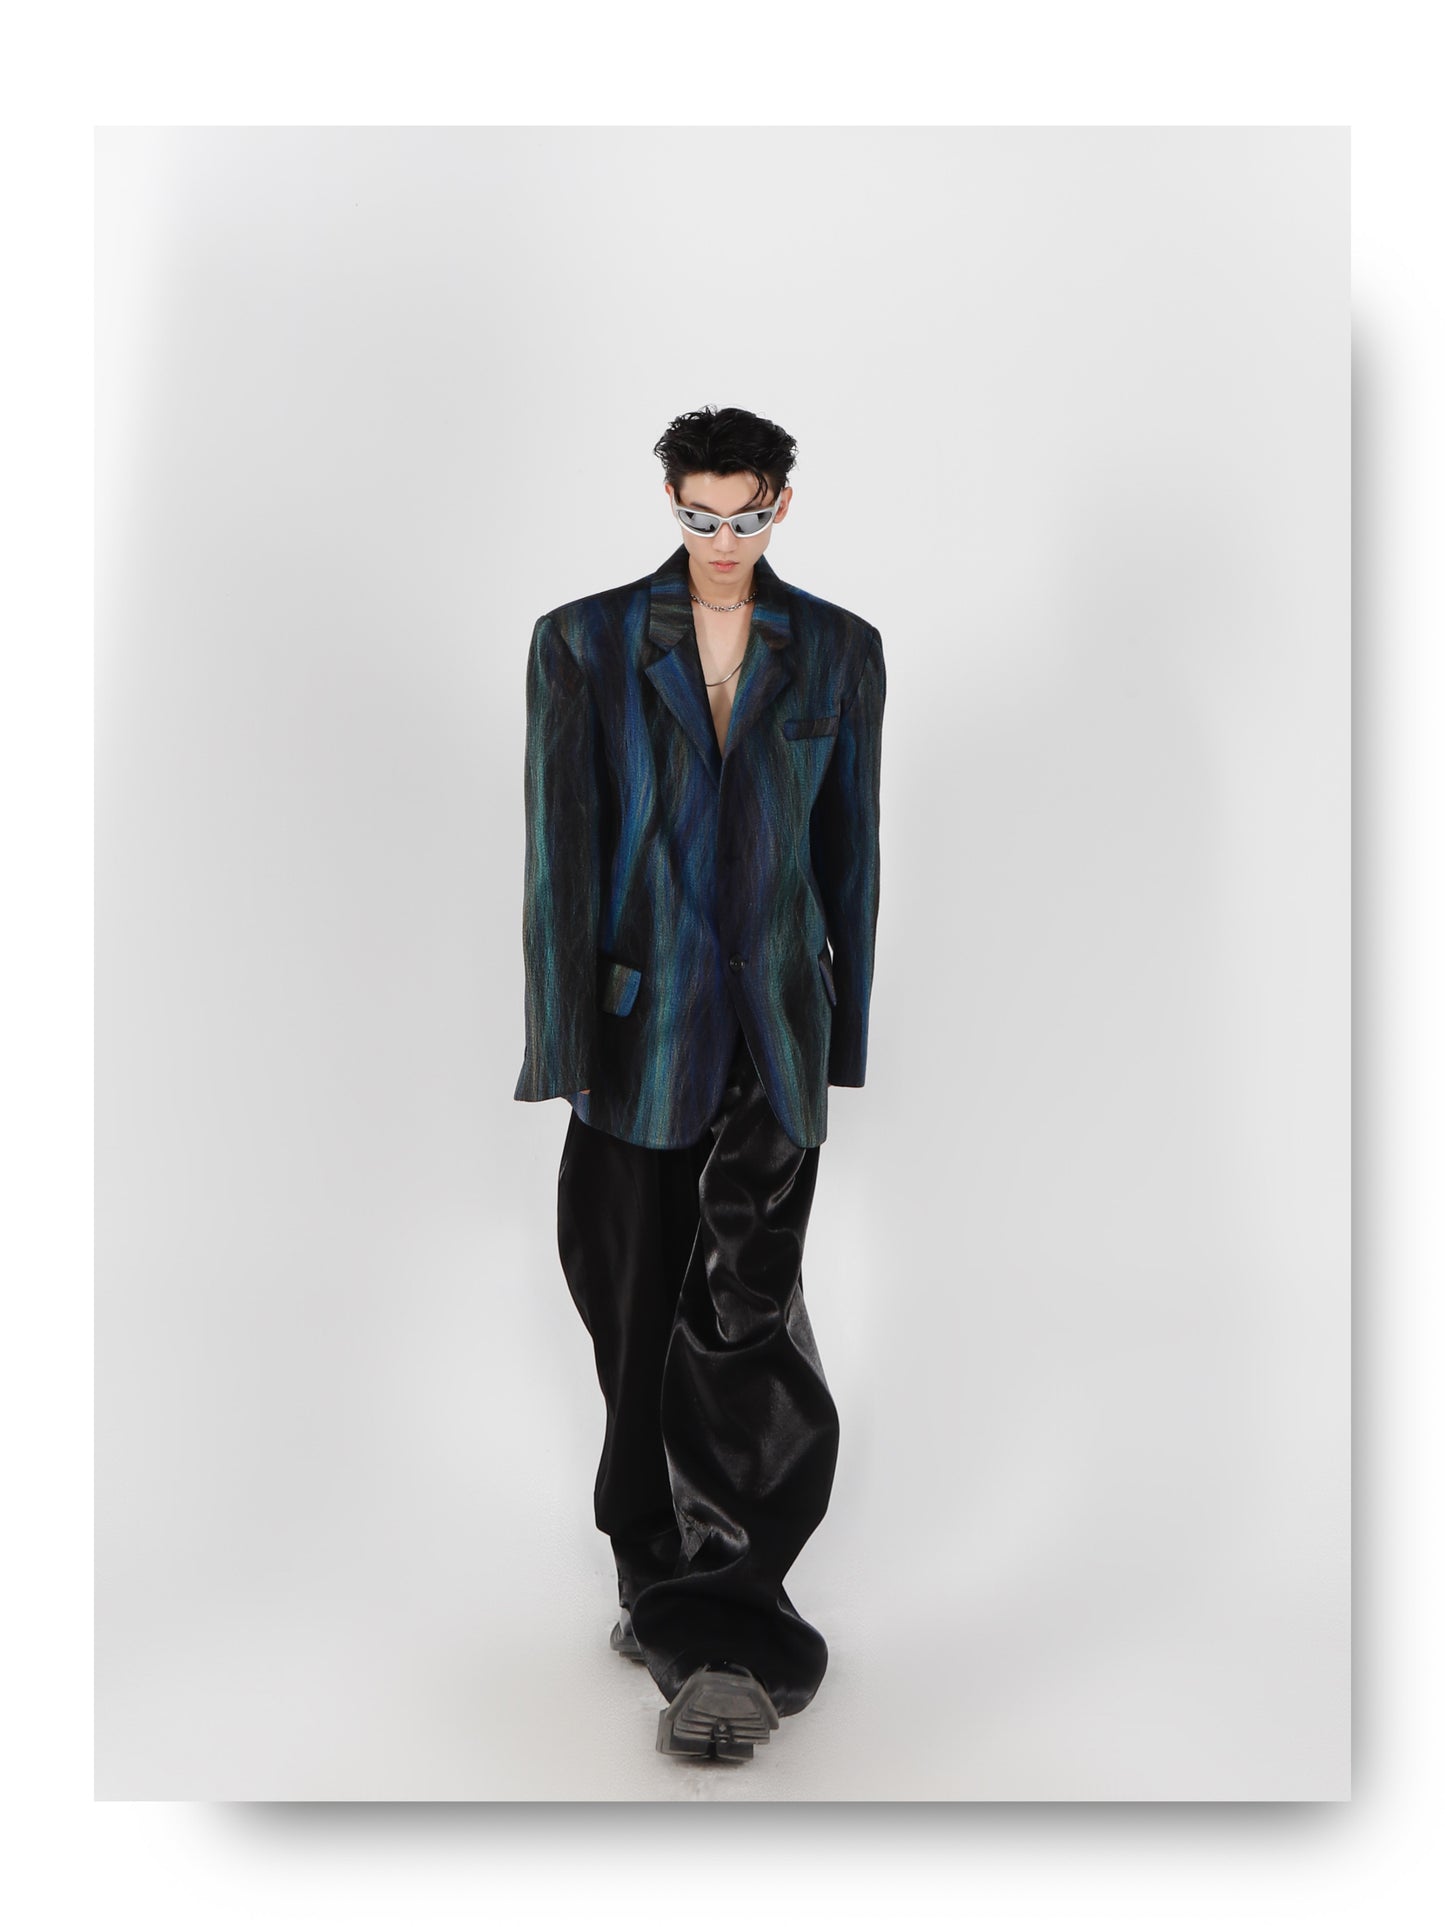 UNISEX Futuristic Patterned Blazer (Suit) | ARGUE CULTURE Collection [H141]